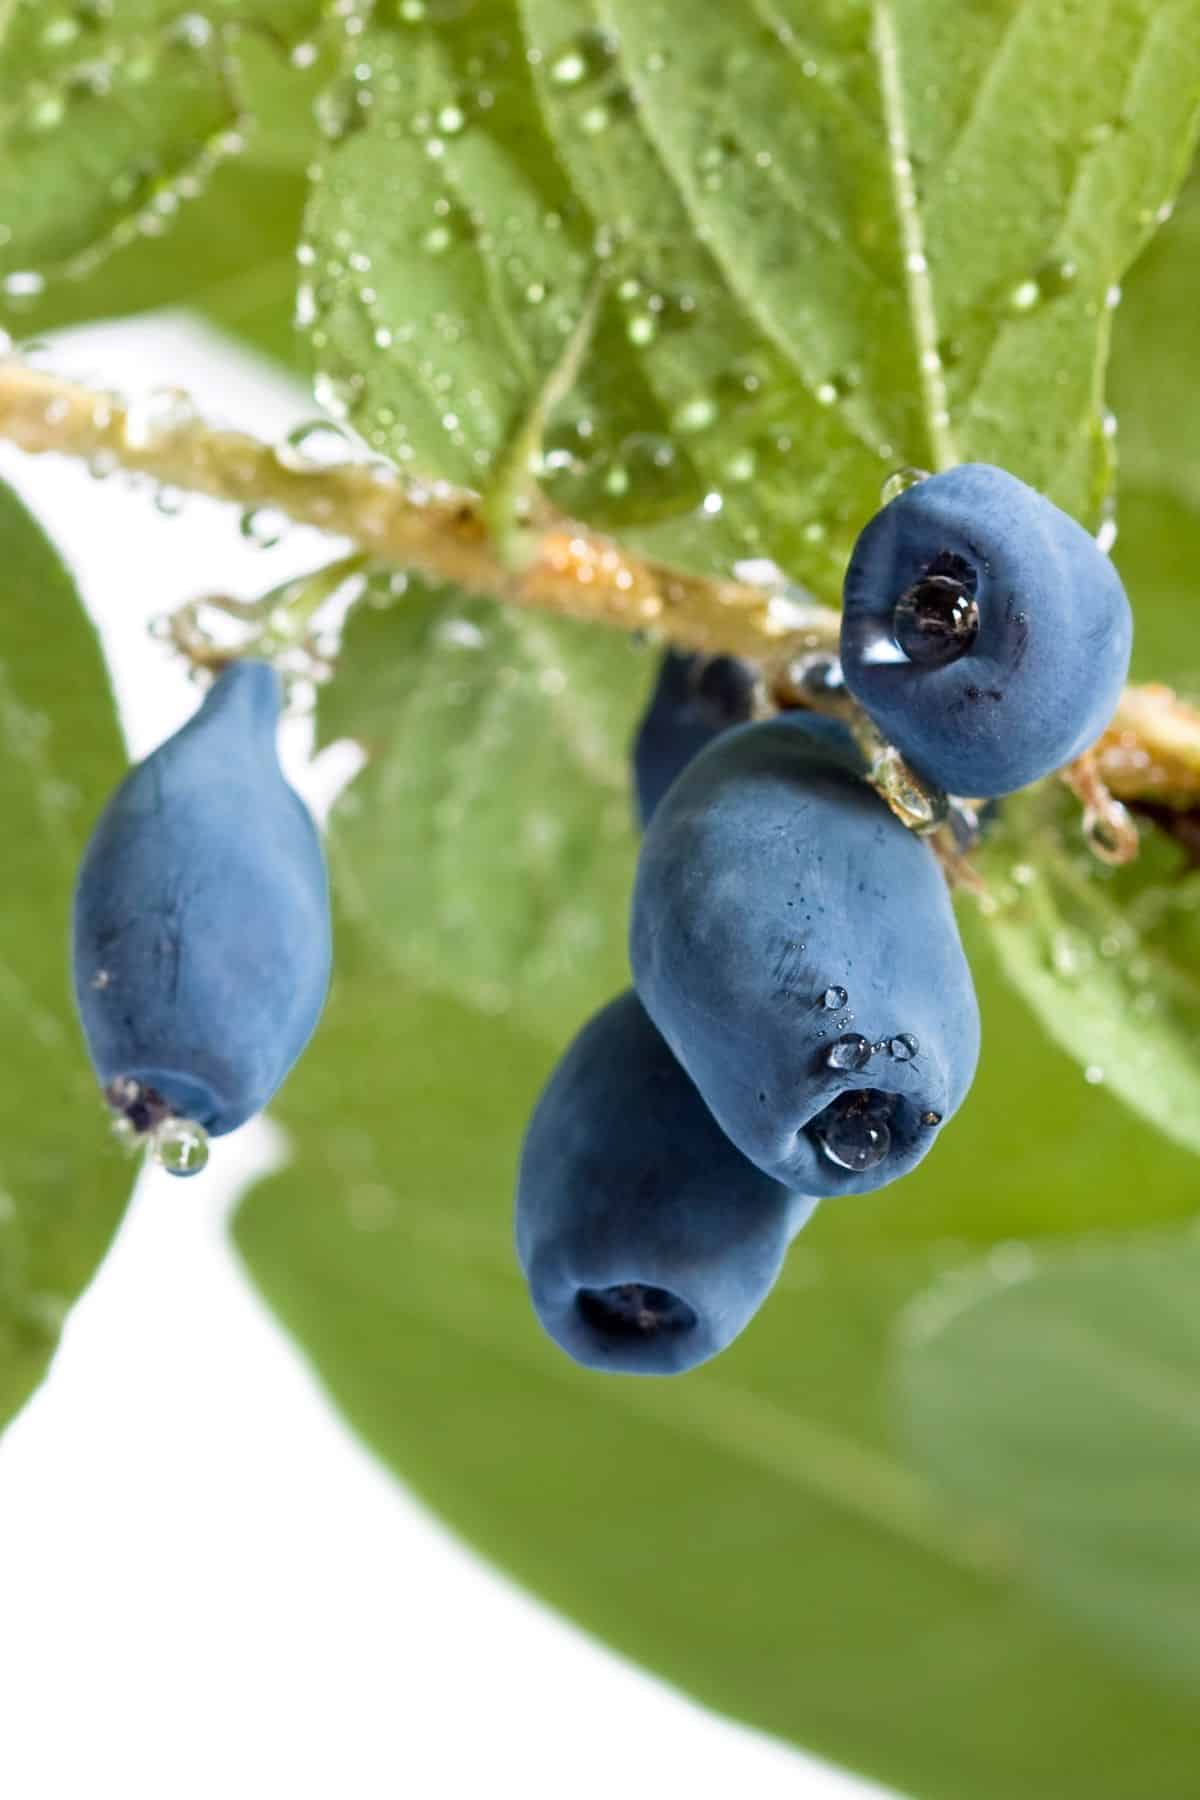 blue honeysuckle fruits hanging on a vine.